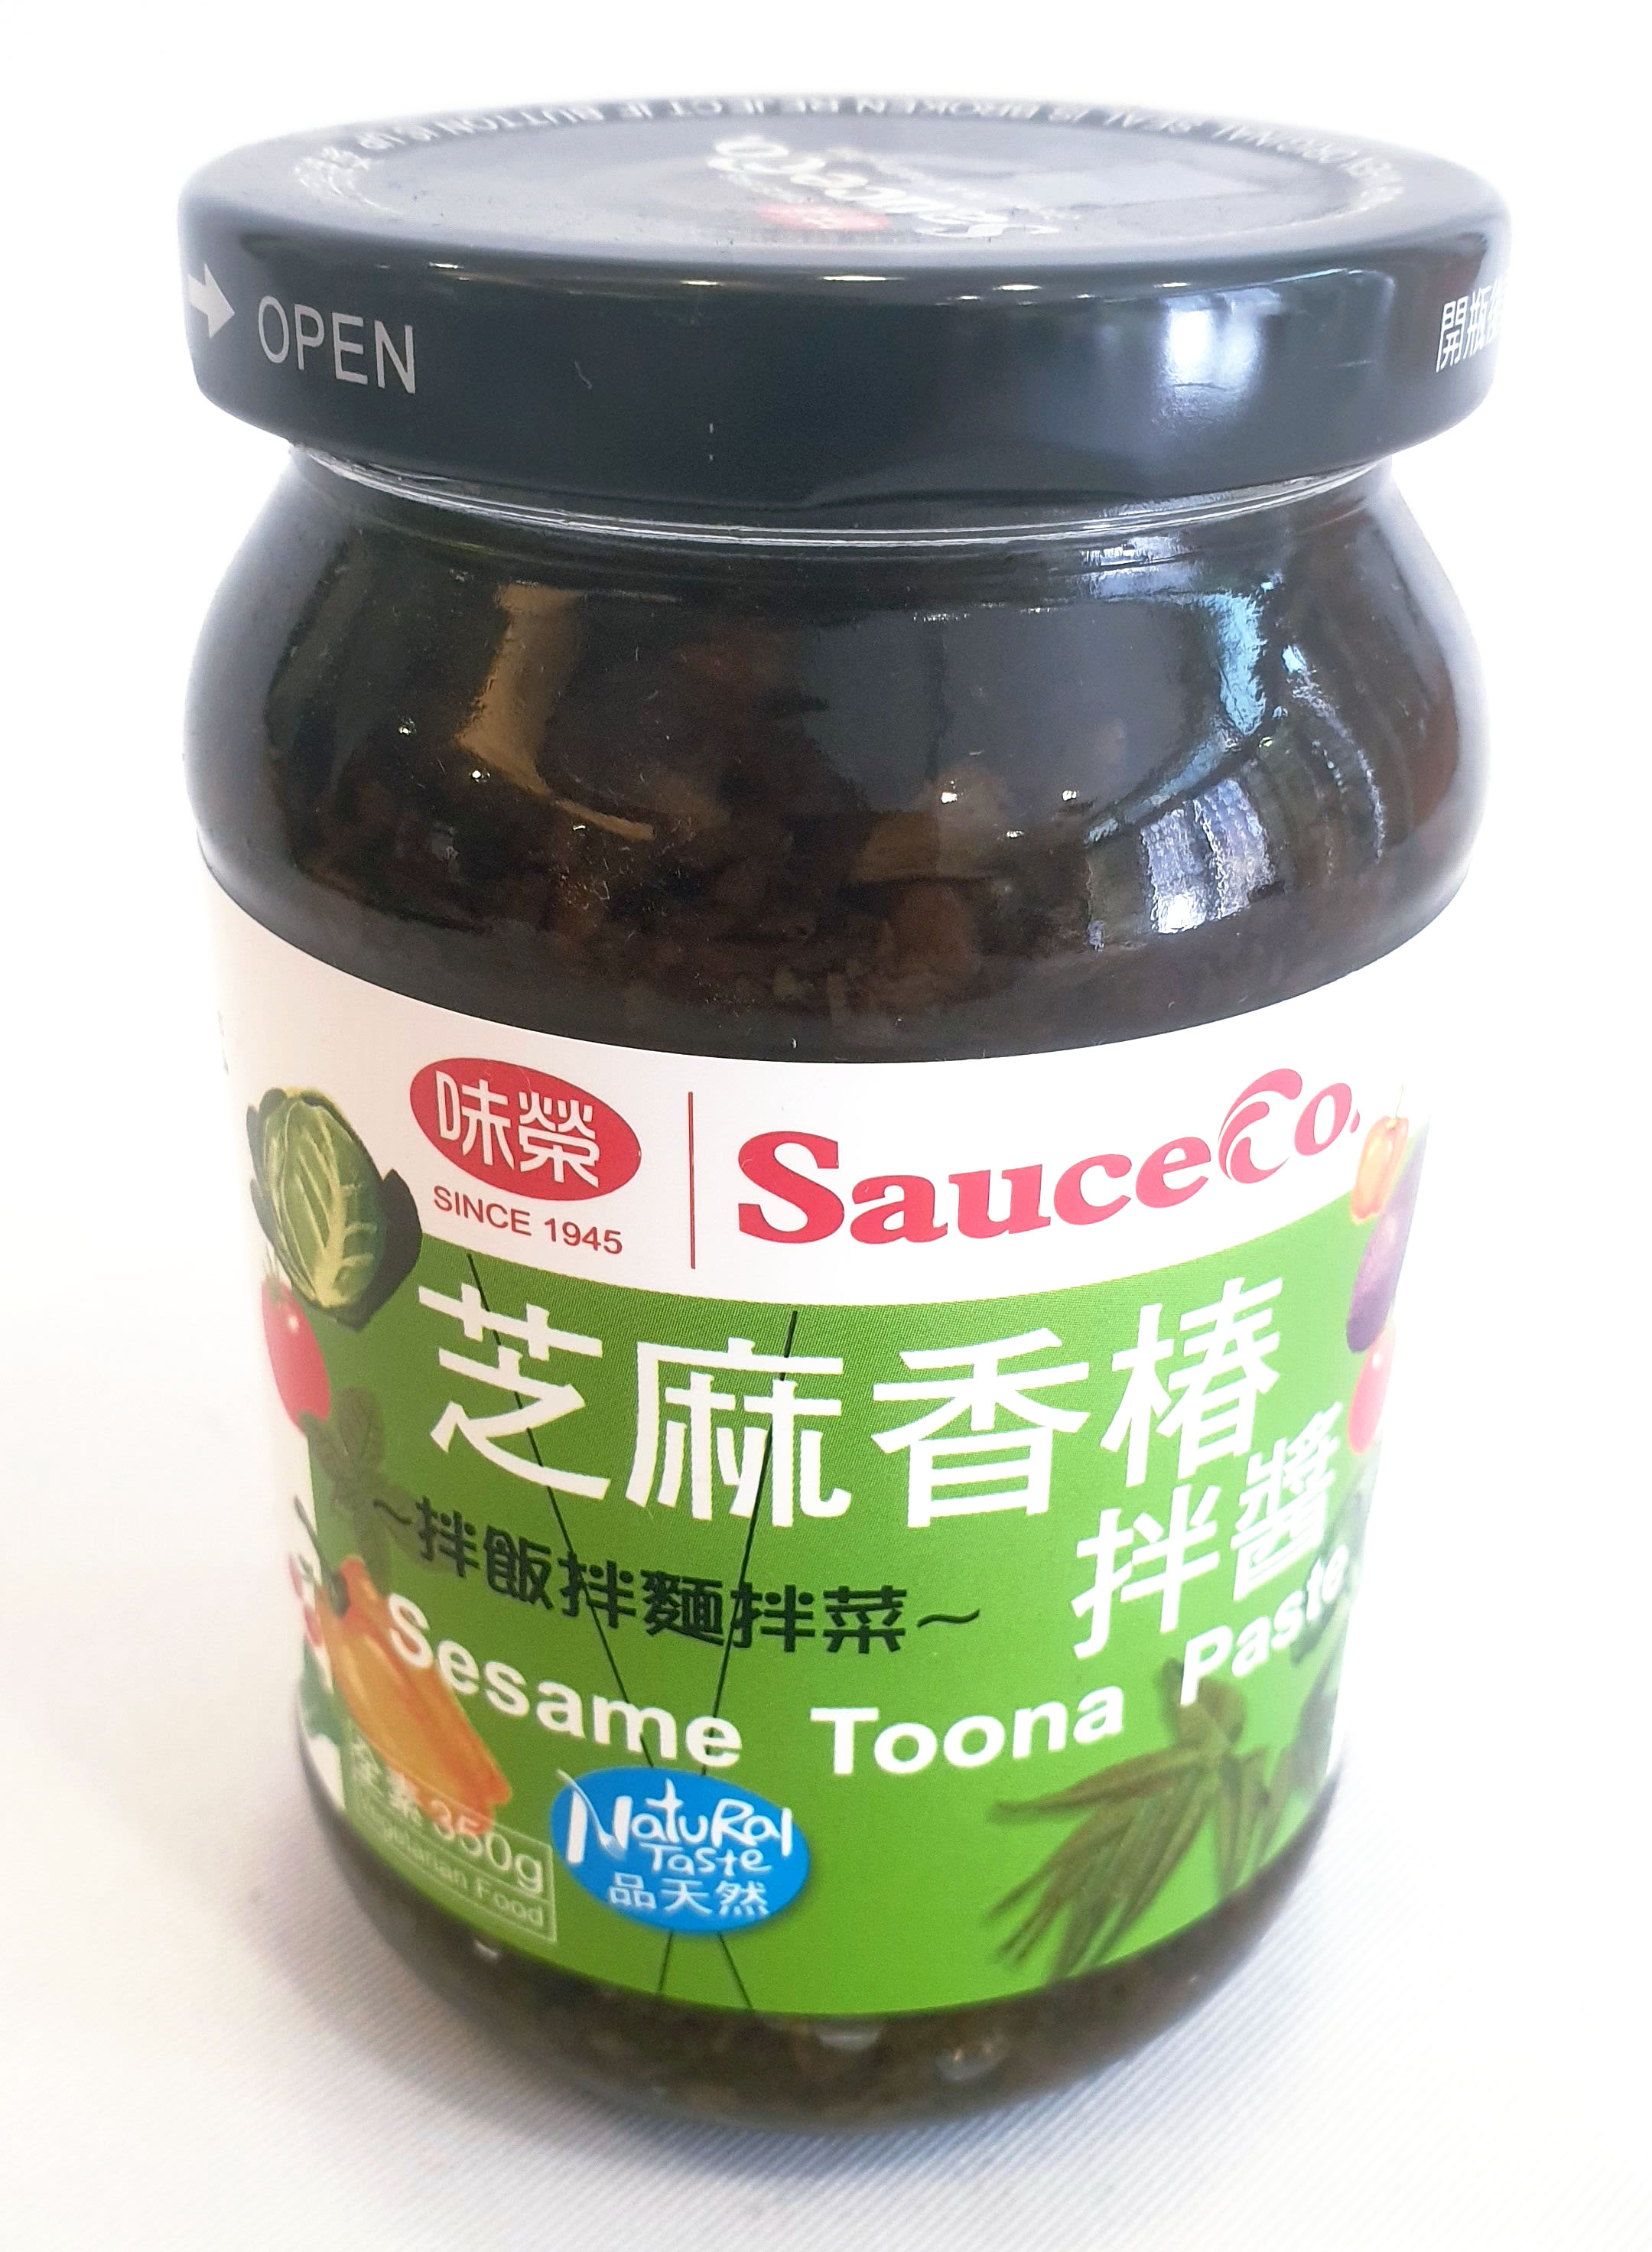 味榮 芝麻香椿拌醬 全素 350公克/罐 (台灣製造)